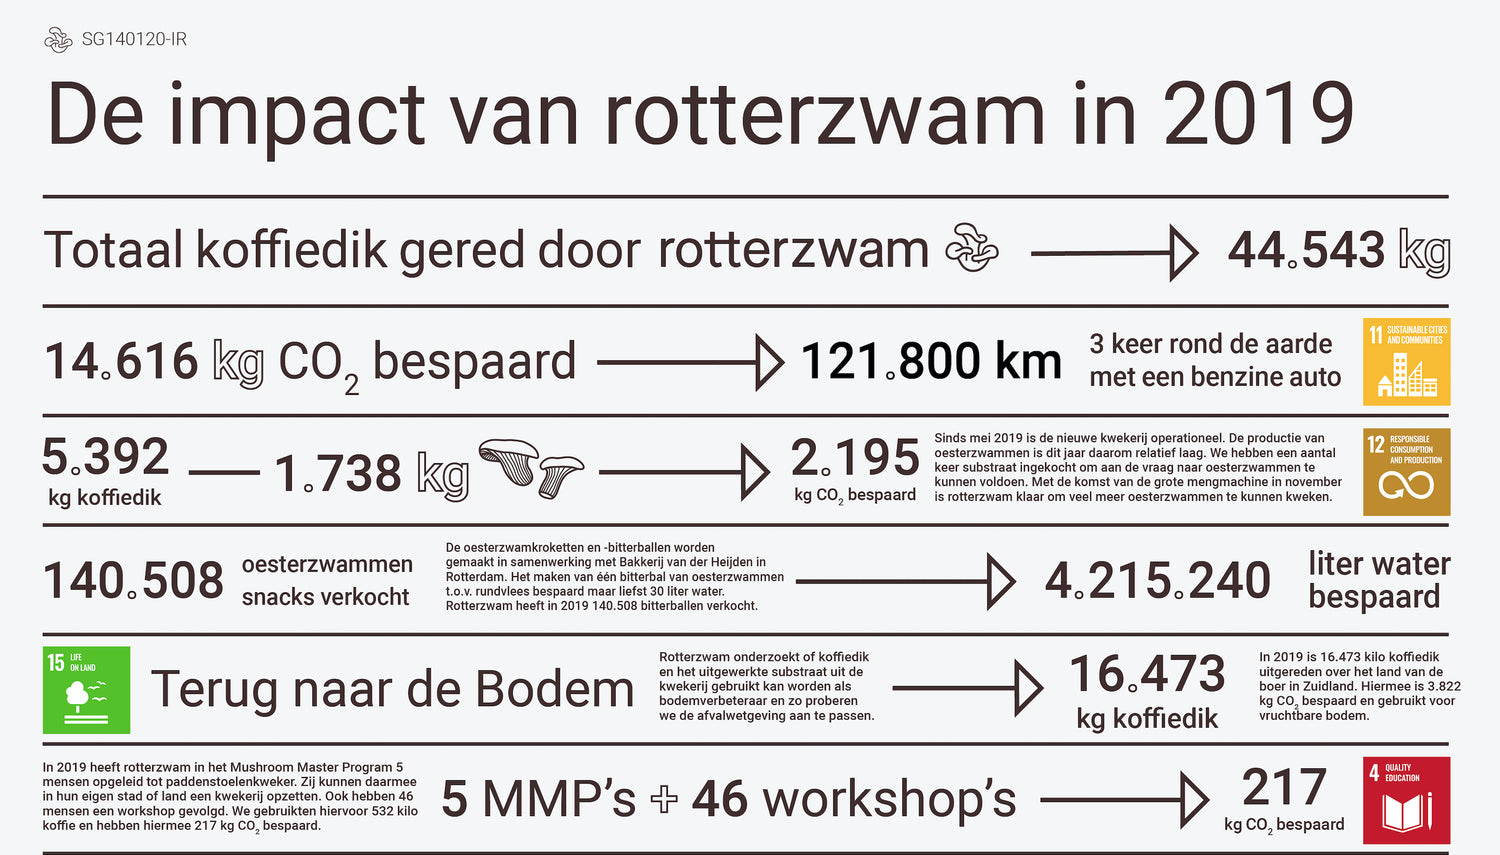 De impact van Rotterzwam in 2019